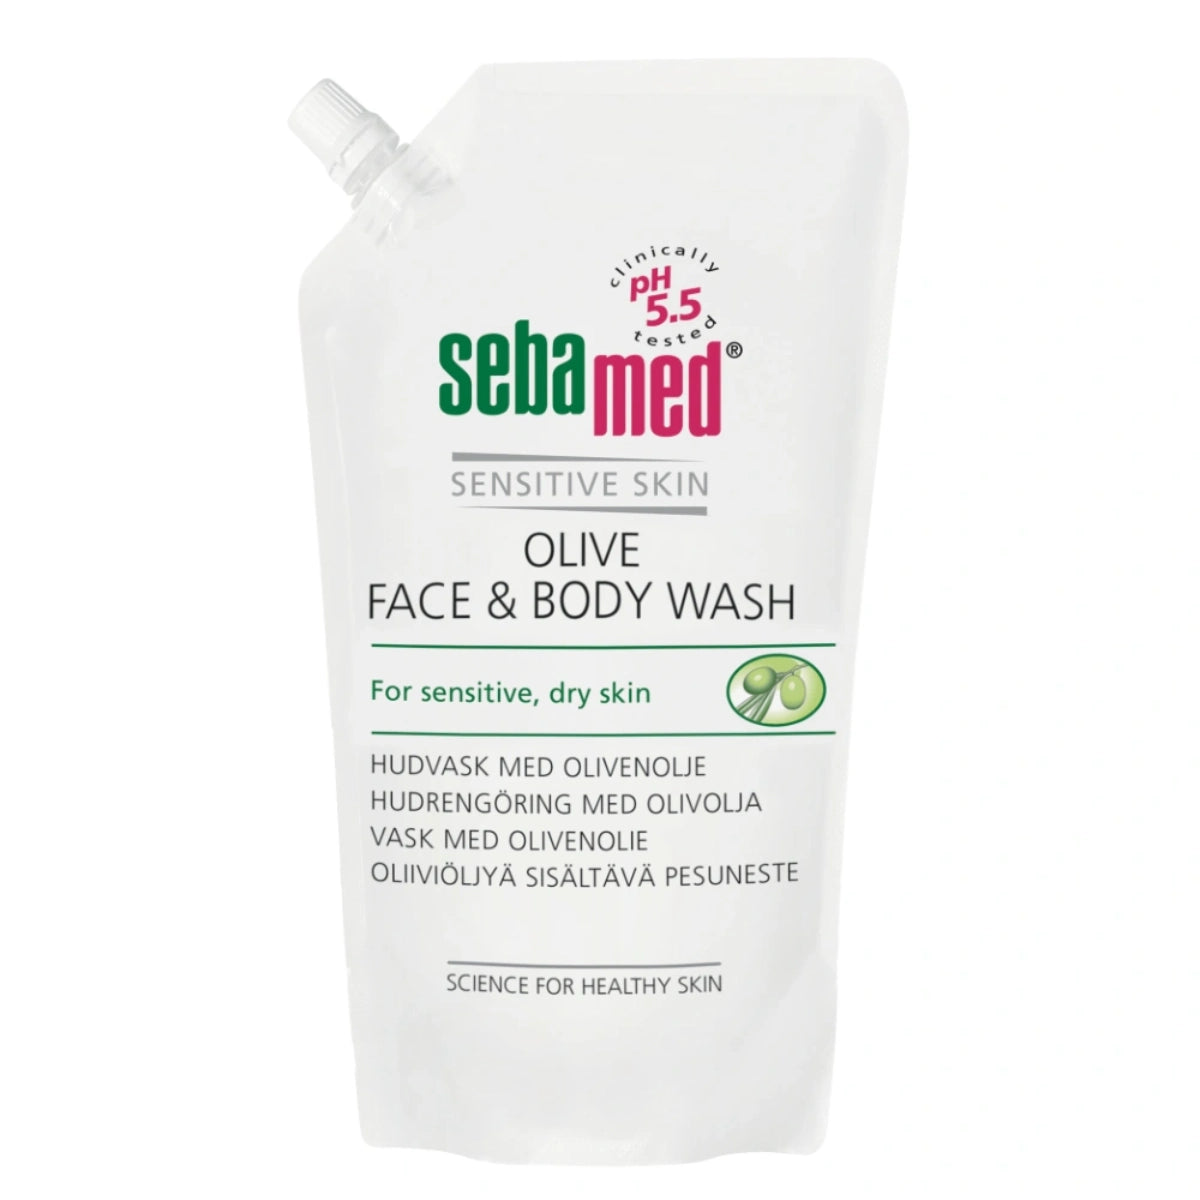 SEBAMED Olive Face & Body Wash pesuneste 1000 ml, täyttöpakkaus erityisesti kuivalle ja herkälle iholle